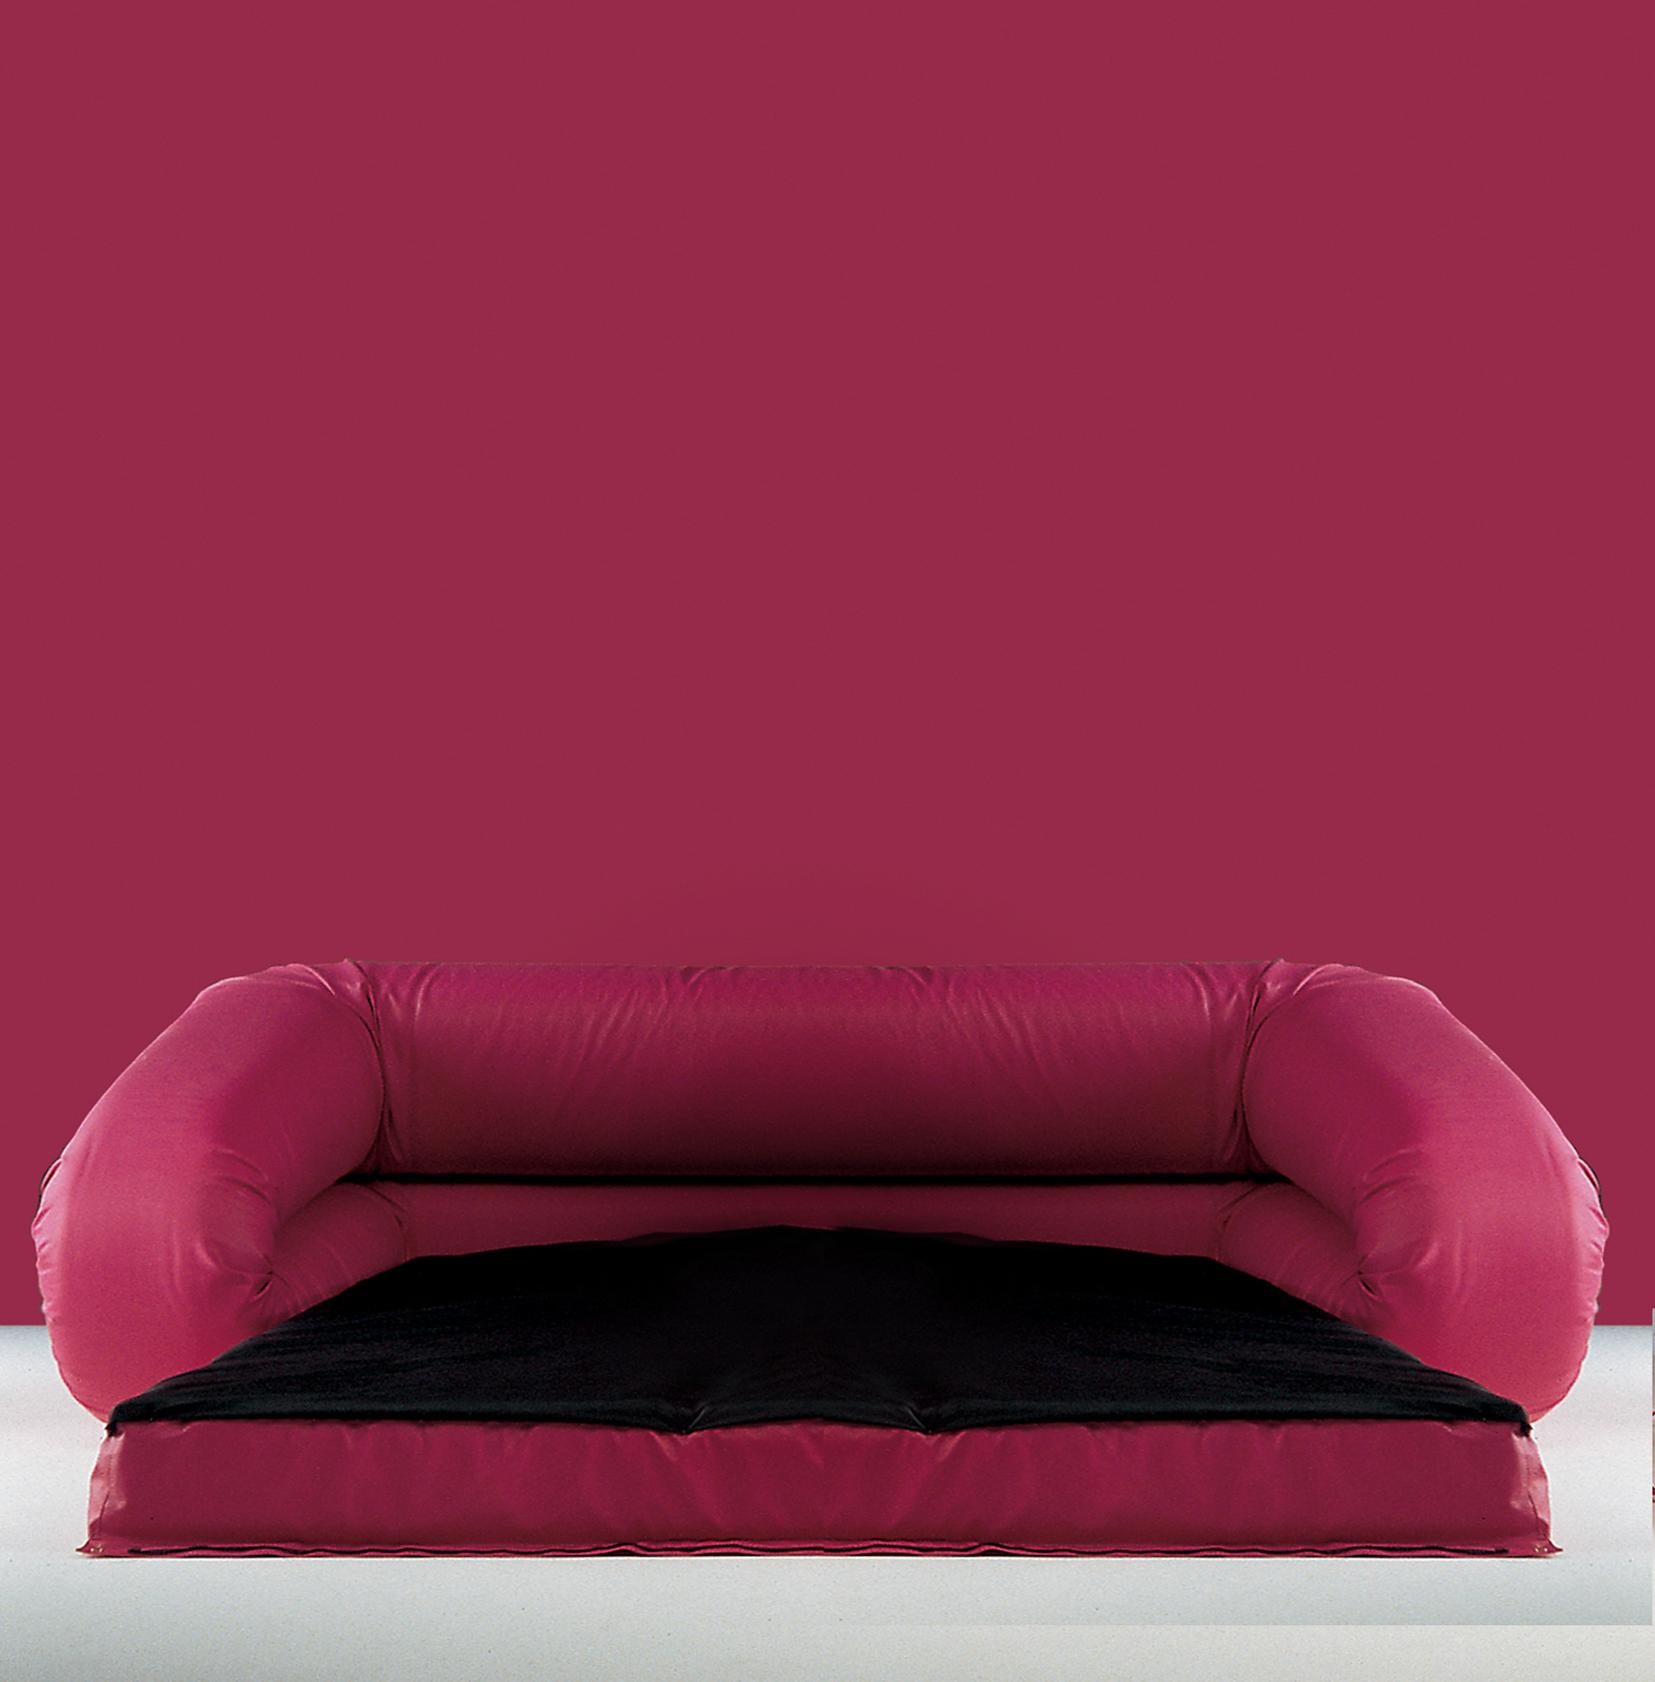 Le canapé-lit, conçu par Alessandro Becchi en collaboration avec l'équipe de Giovannetti, a récemment fêté ses 50 ans.
Son histoire est riche en événements et participations importants. Une pièce considérée comme un 